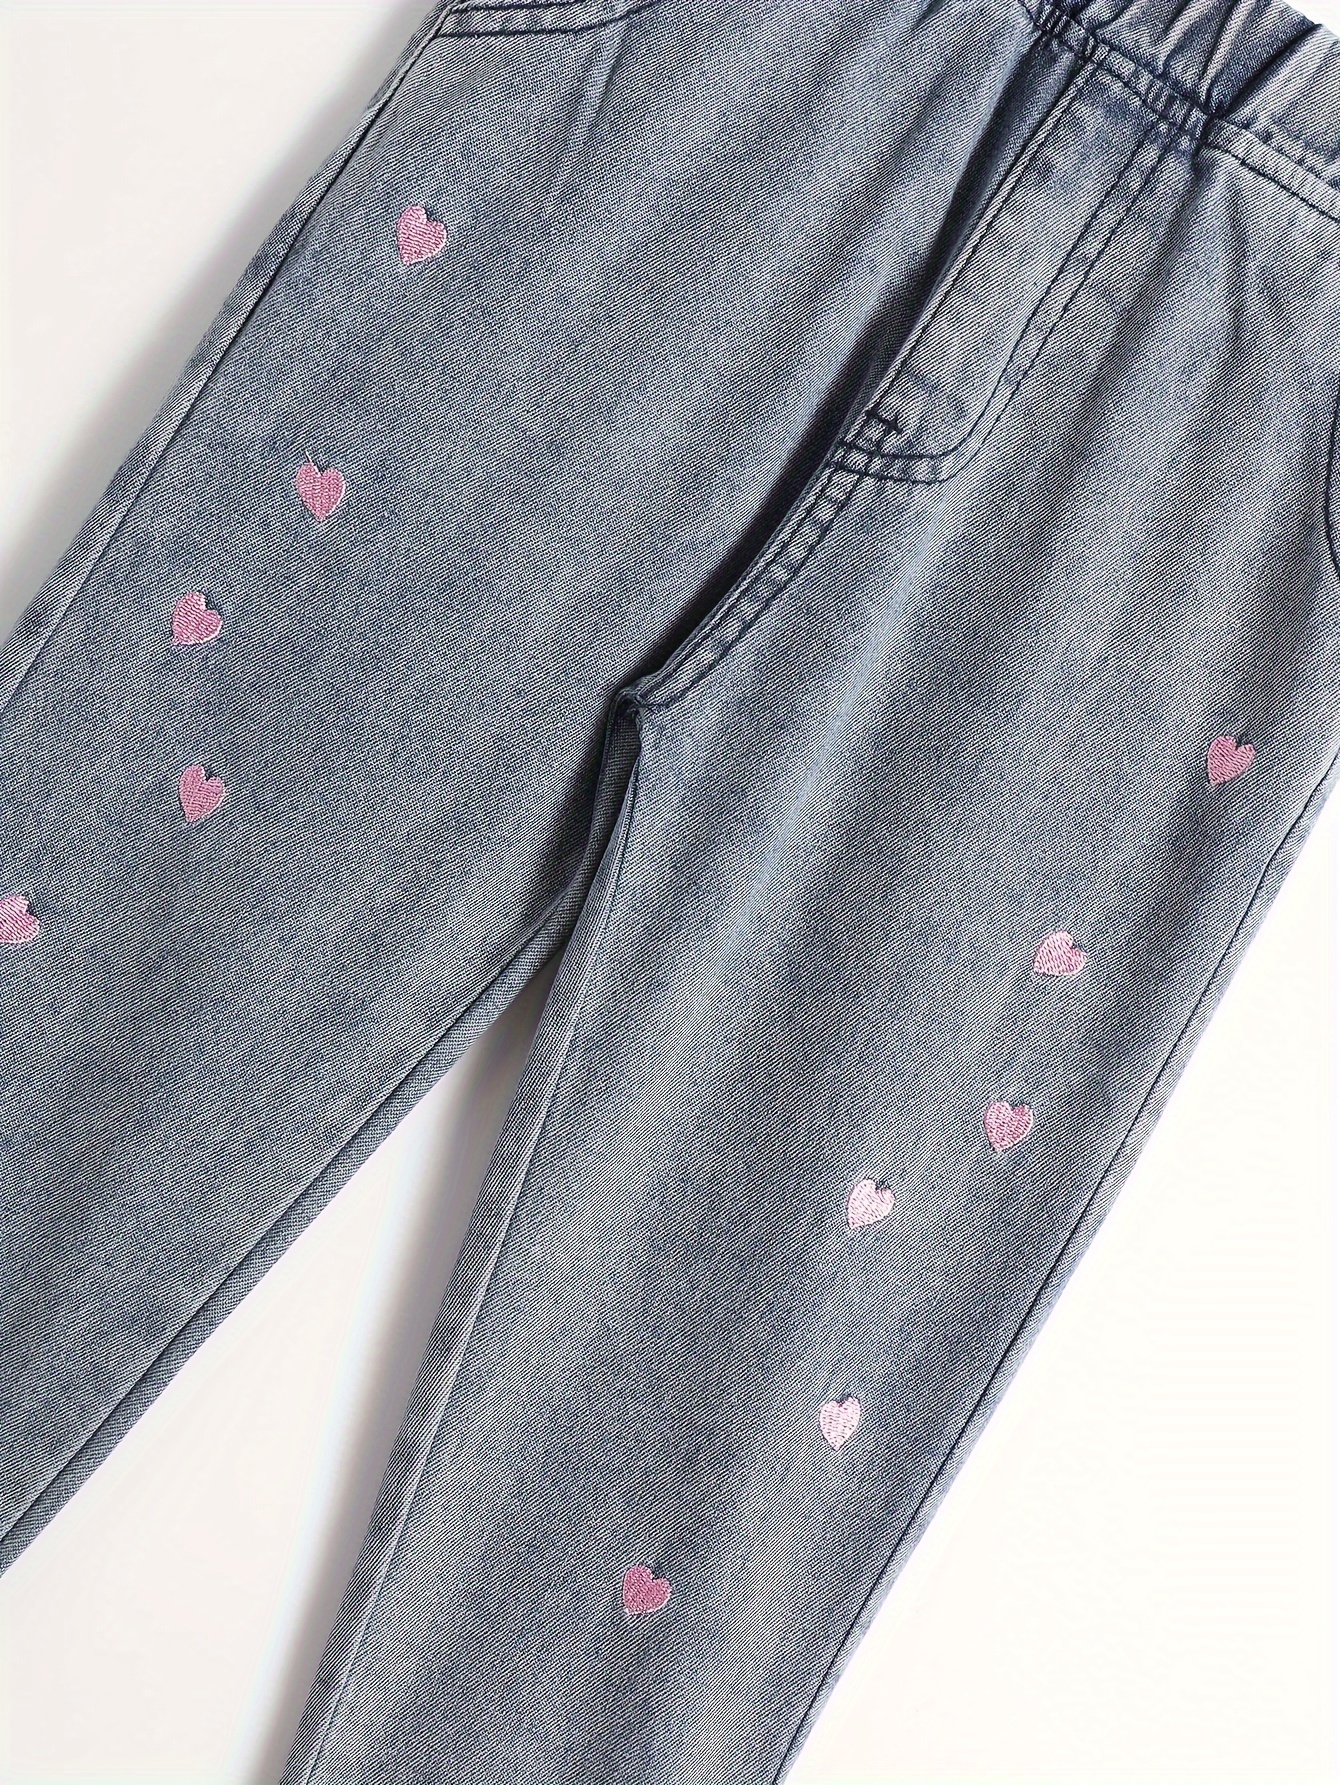 Heart Embellished Jeans - Light Wash